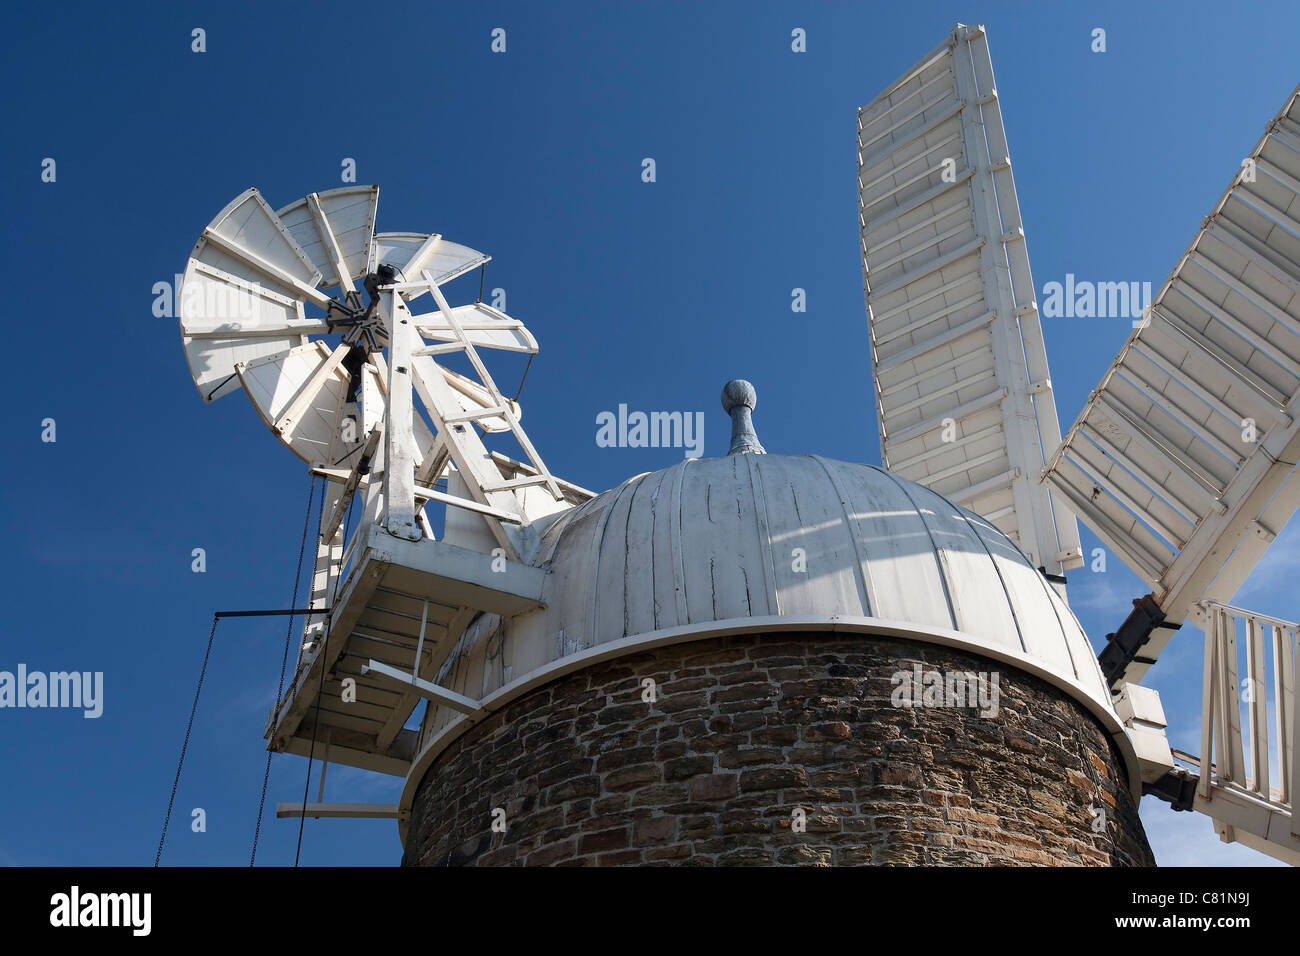 Windmühle Vane und Segel aus Heage Windmühle, Derbyshire, England, die nur arbeiten 6 Segel-Windmühle im Vereinigten Königreich zu Stein. Stockfoto